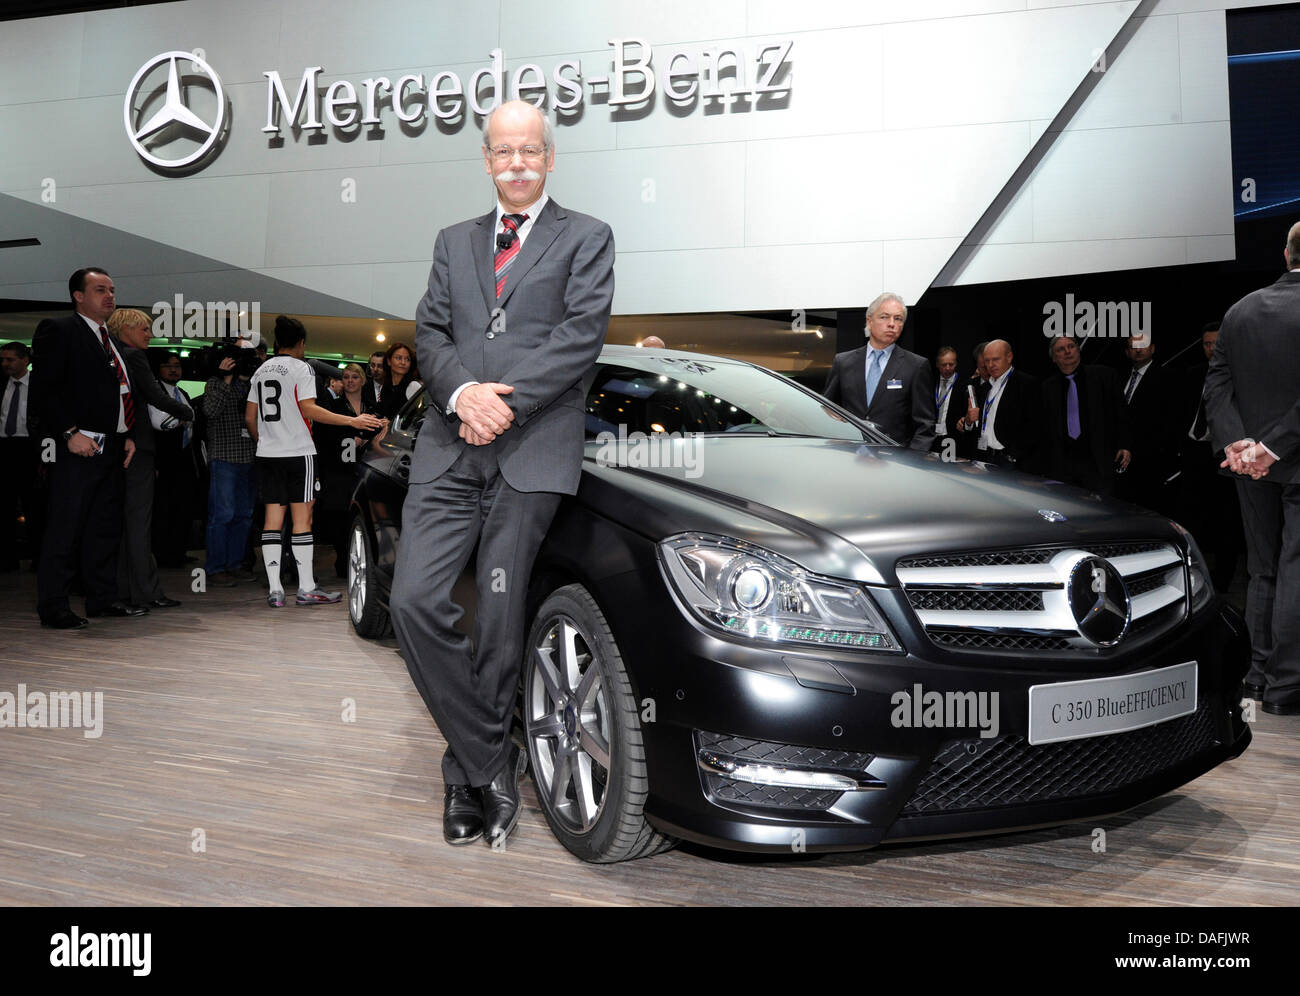 Das neue Mercedes c-Klasse Coupé-Auto wird vom Vorsitzenden des Vorstands  der Daimler AG, Dieter Zetsche, auf dem Genfer Autosalon in Genf, Schweiz,  1. März 2011 vorgestellt. Foto: ULI DECK Stockfotografie - Alamy